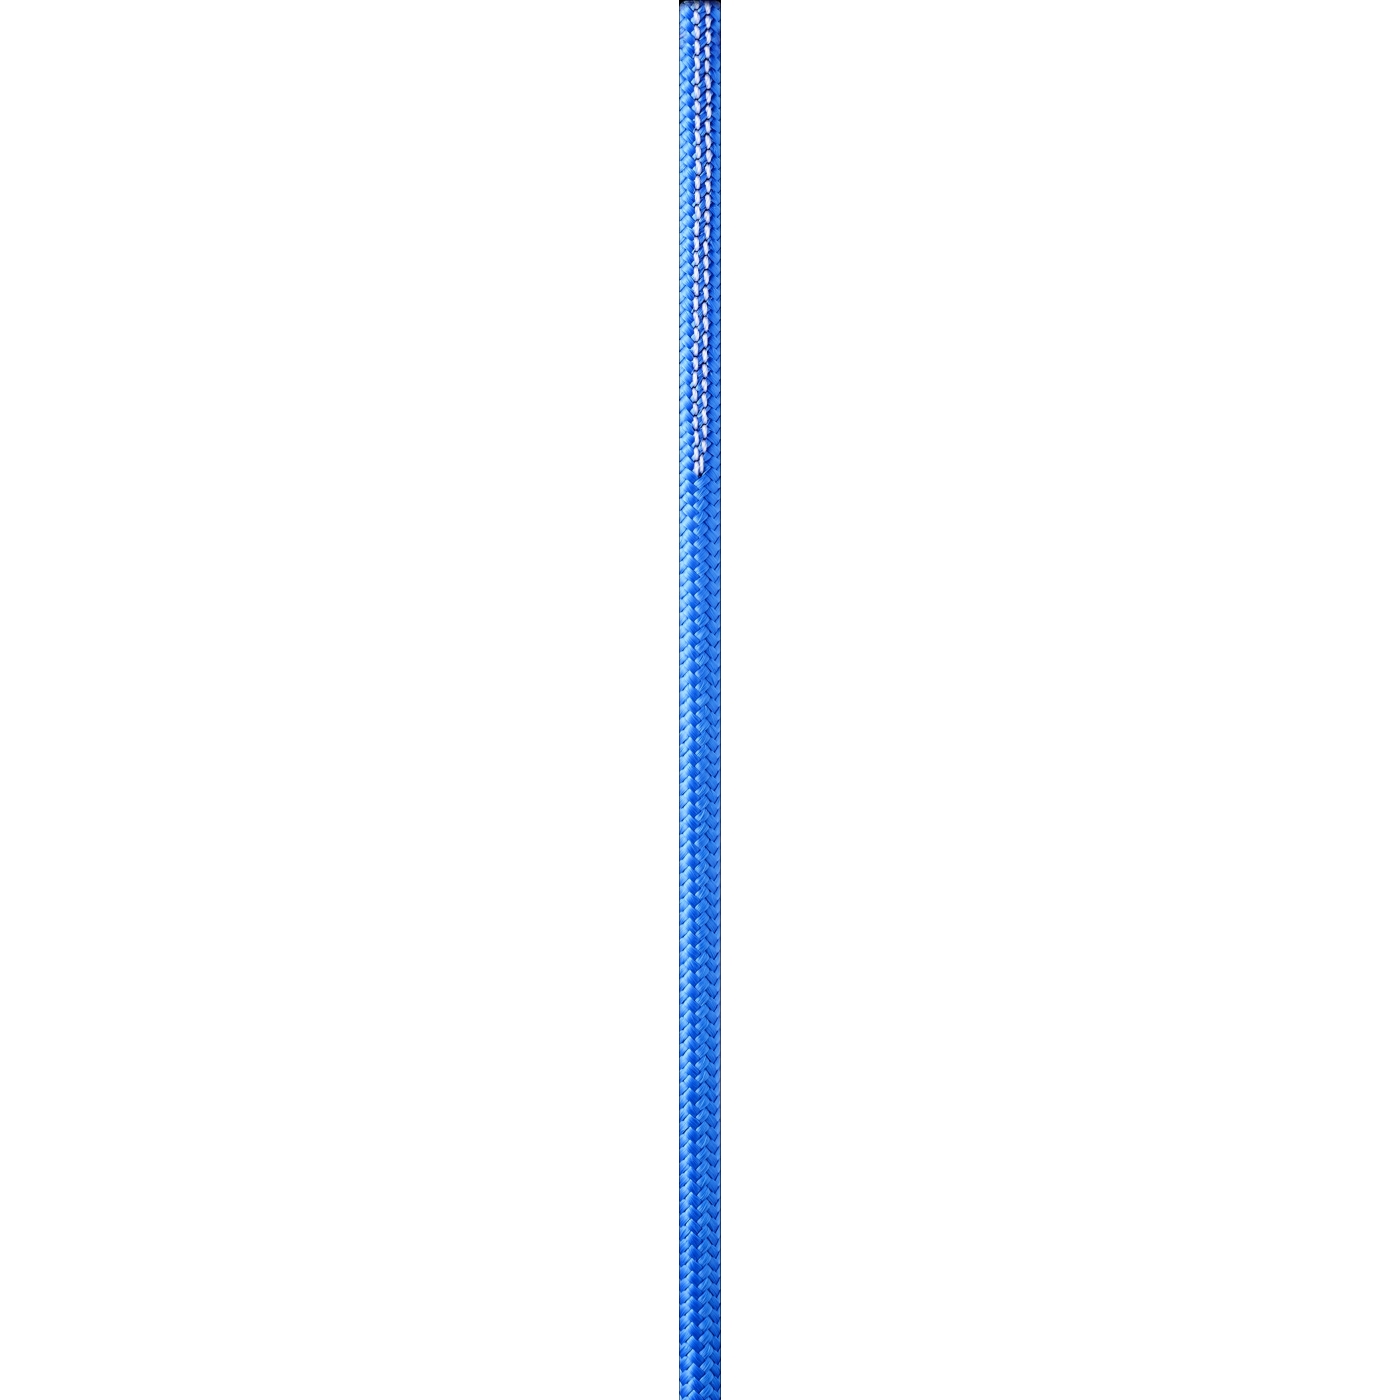 Produktbild von Edelrid Hard Line 6mm Reepschnur - 3 m - blue